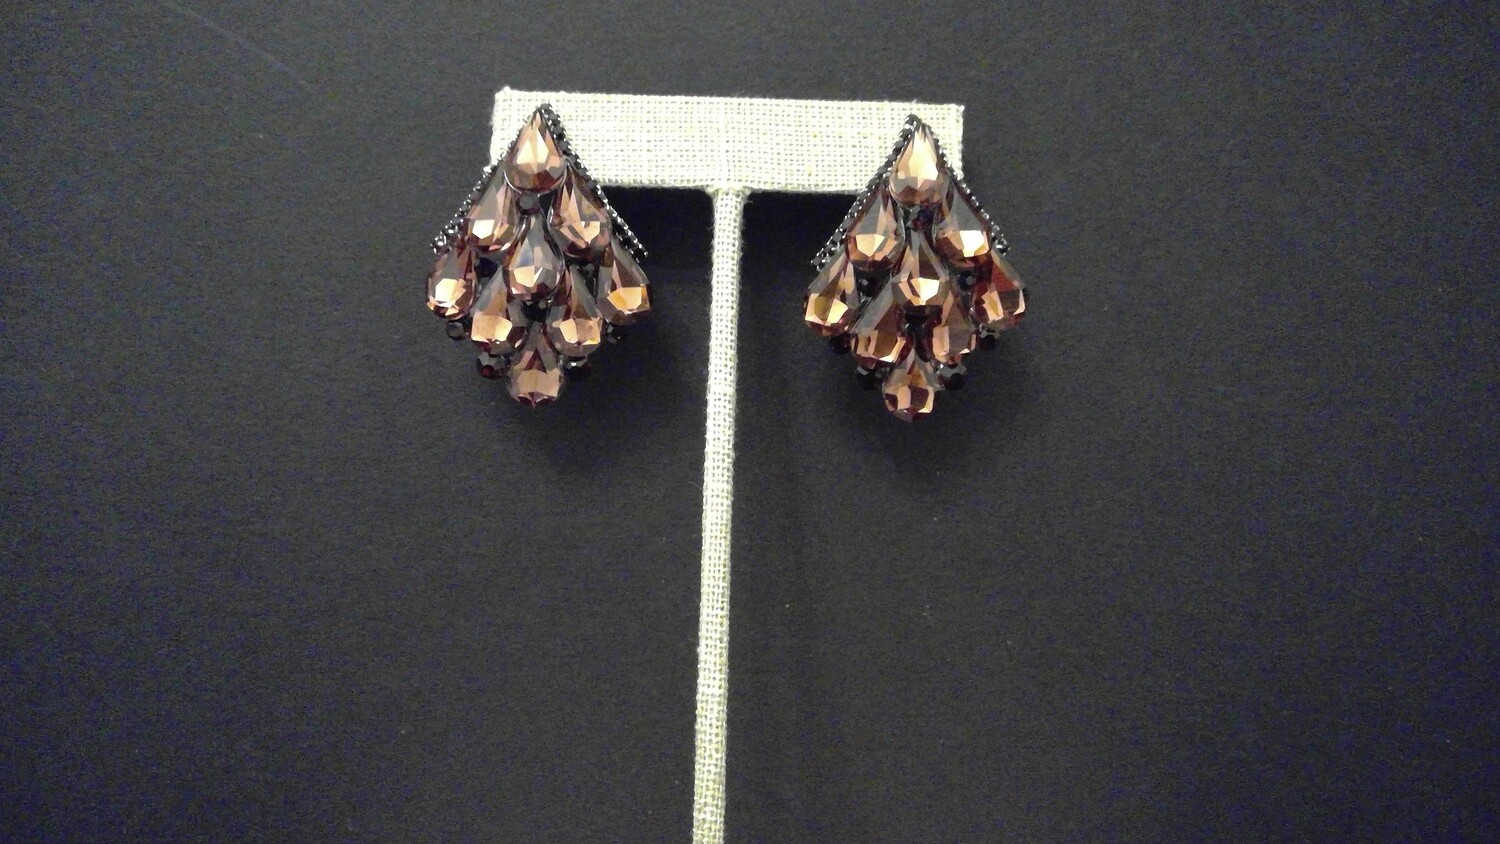 Pageant earrings